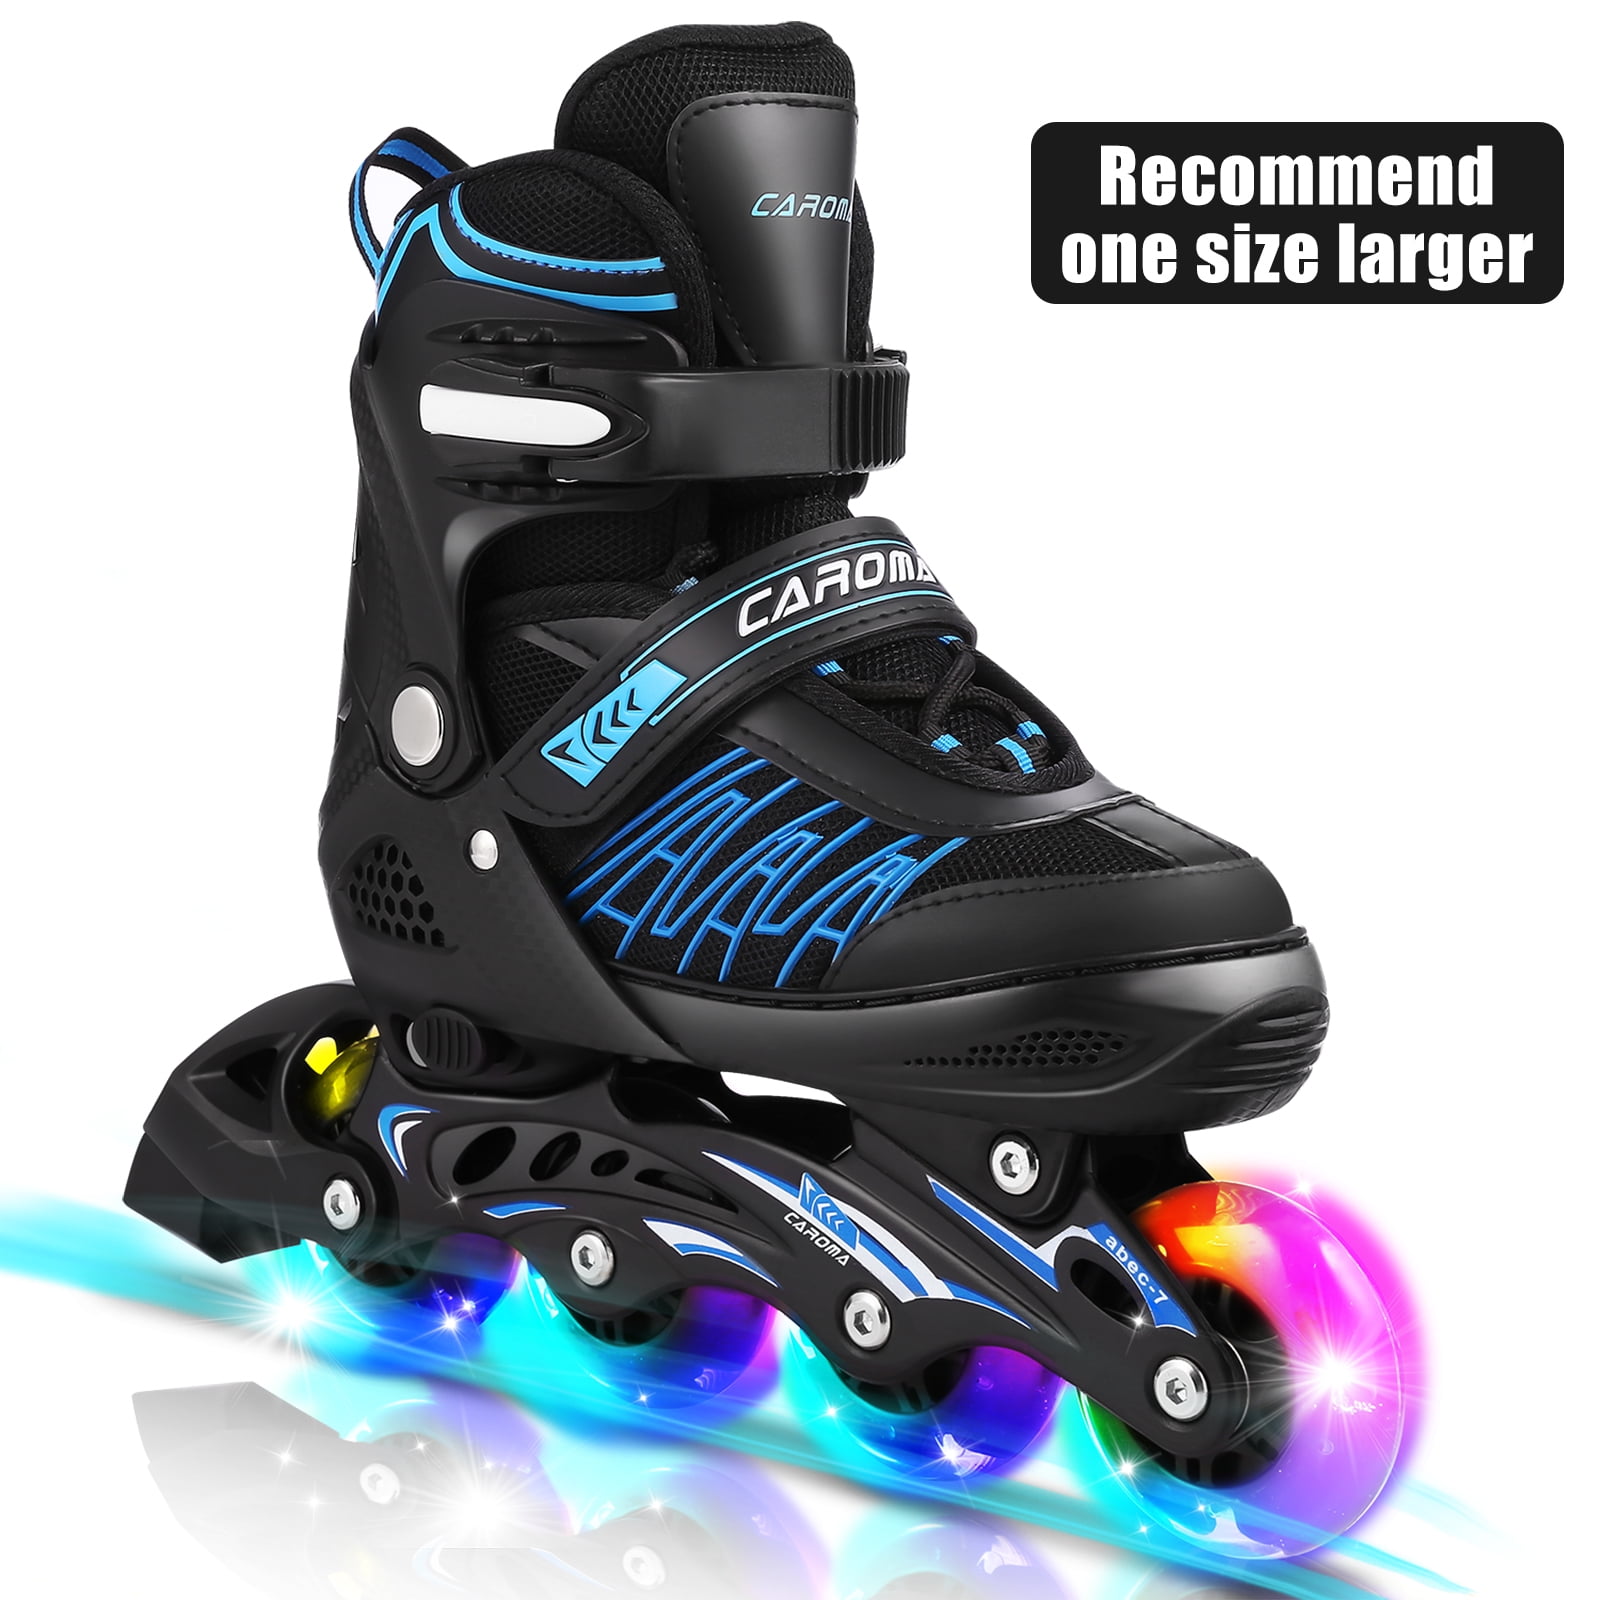 New~Inline Skates for Men^Women Size 7 8 9 10 11 Adjustable Roller Blades Gifts* 